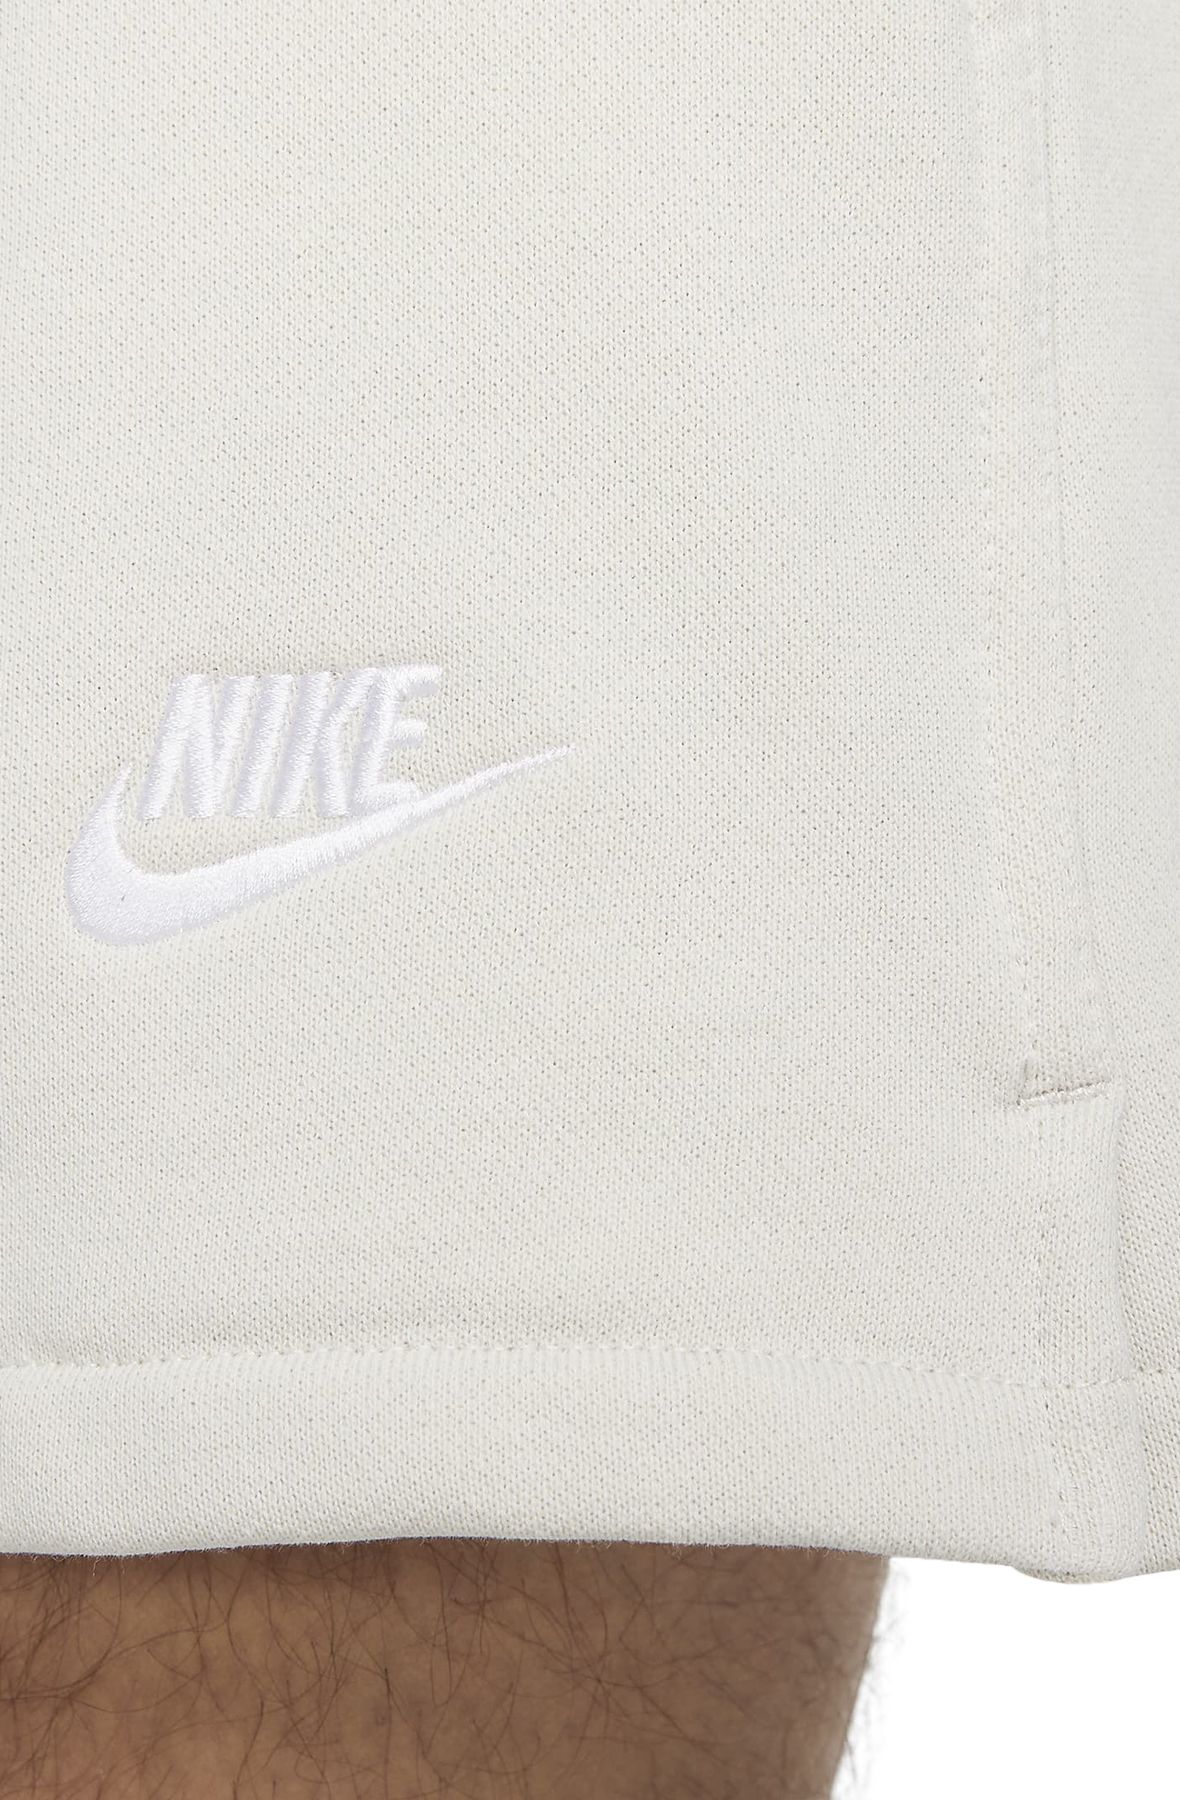 Short Nike Club Fleece Blanc pour Homme - DX0731-100